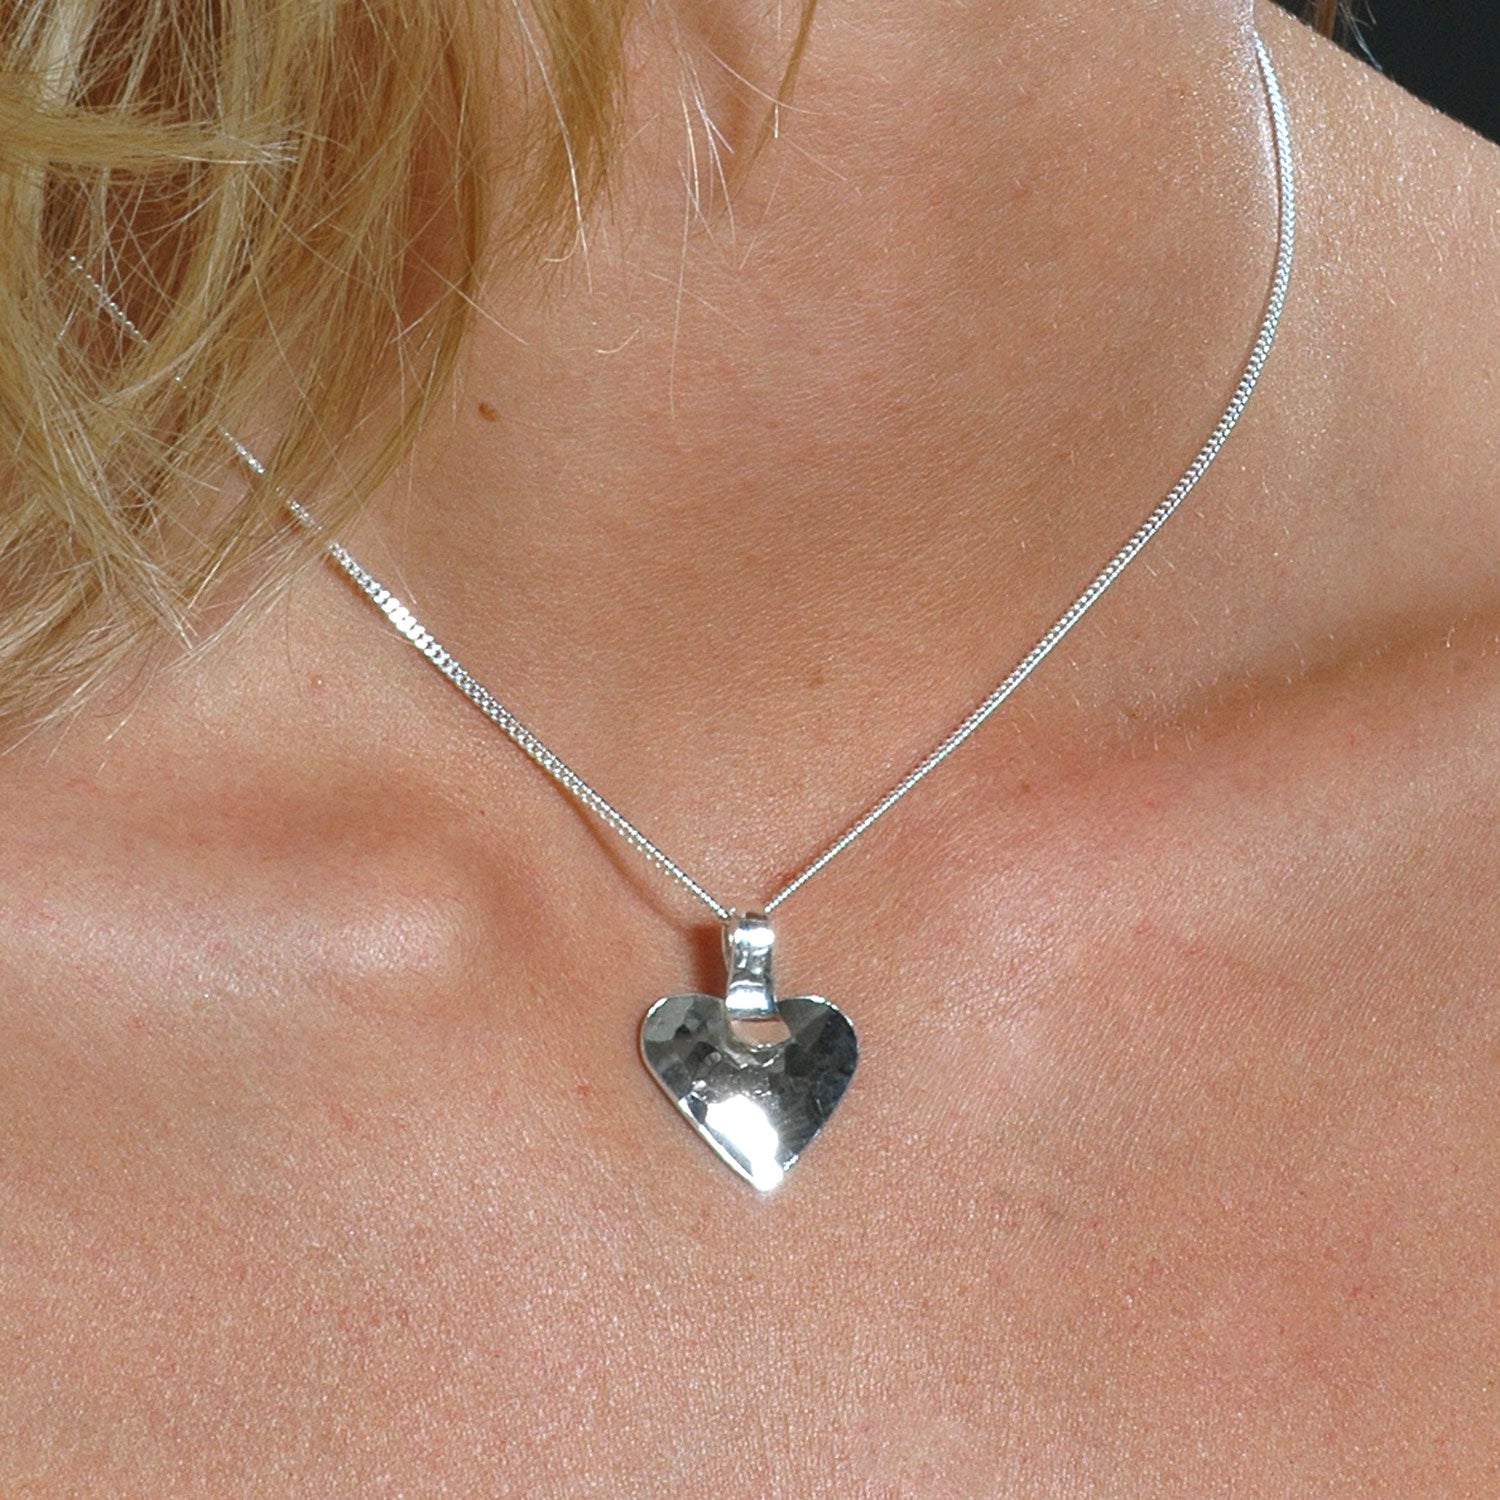 HAMRAT HJÄRTA (Hammered heart) necklace